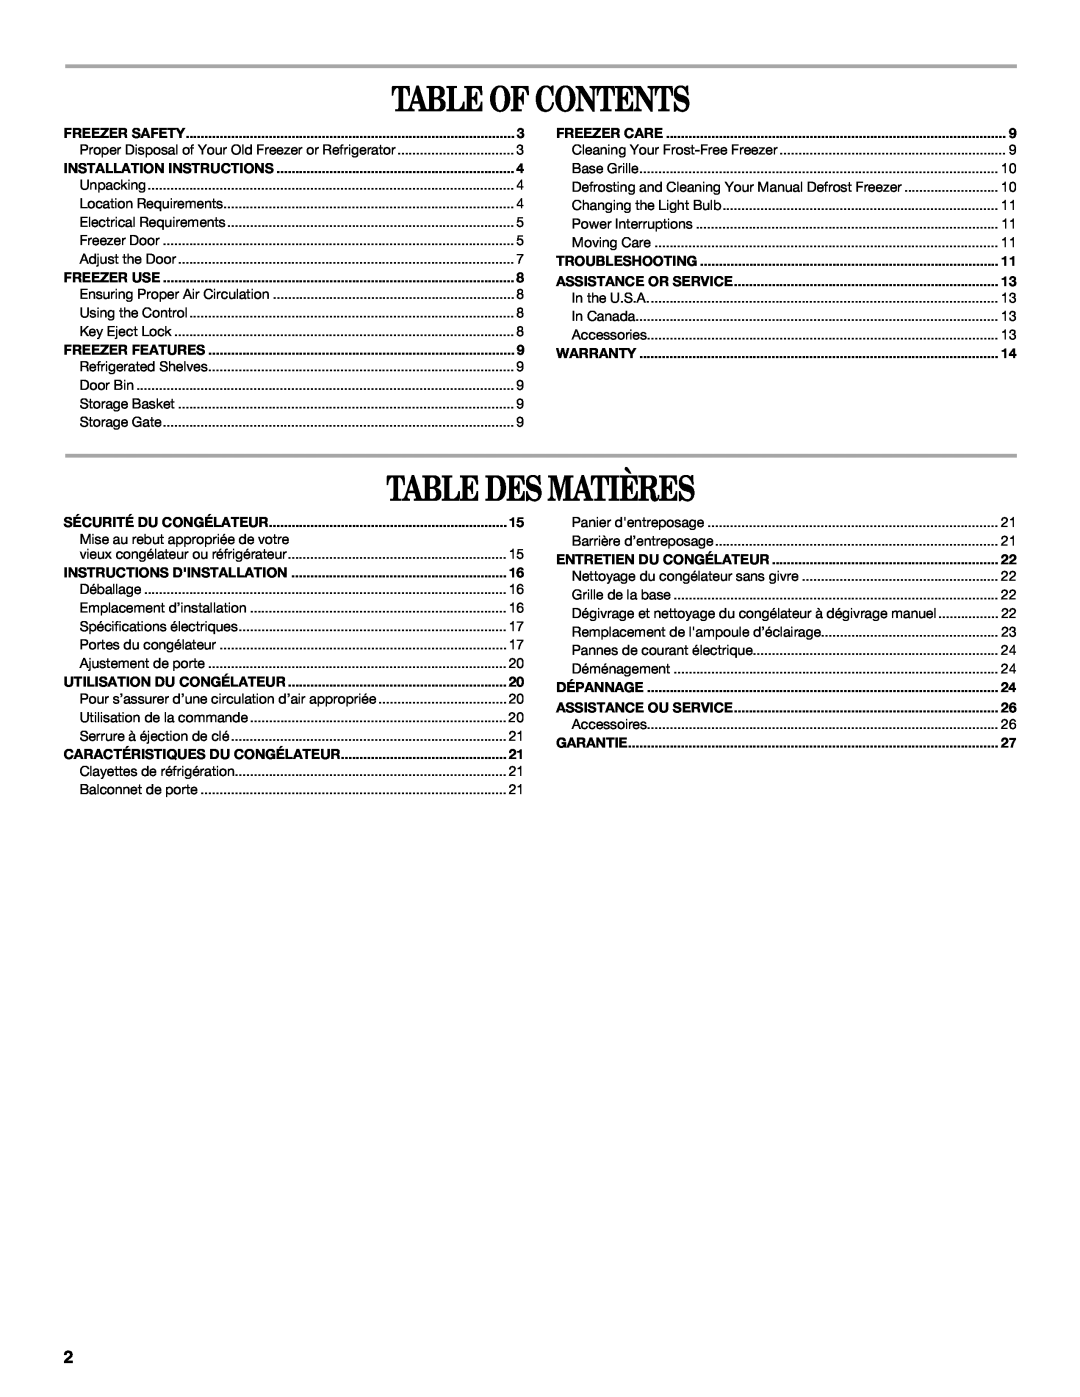 Amana W10326797A manual Table Of Contents, Table Des Matières, Installation Instructions, Sécurité Du Congélateur 